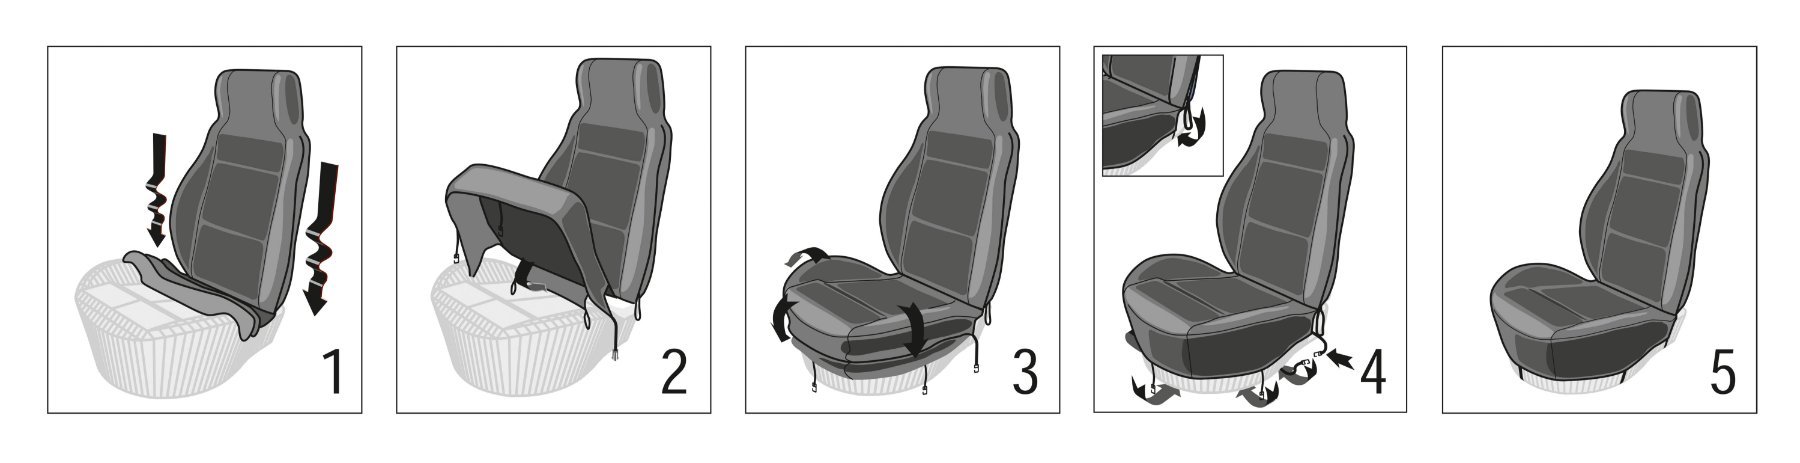 ZIPP IT Premium Housse de sièges Gordon pour deux sièges avant avec système de fermeture éclair noir/gris